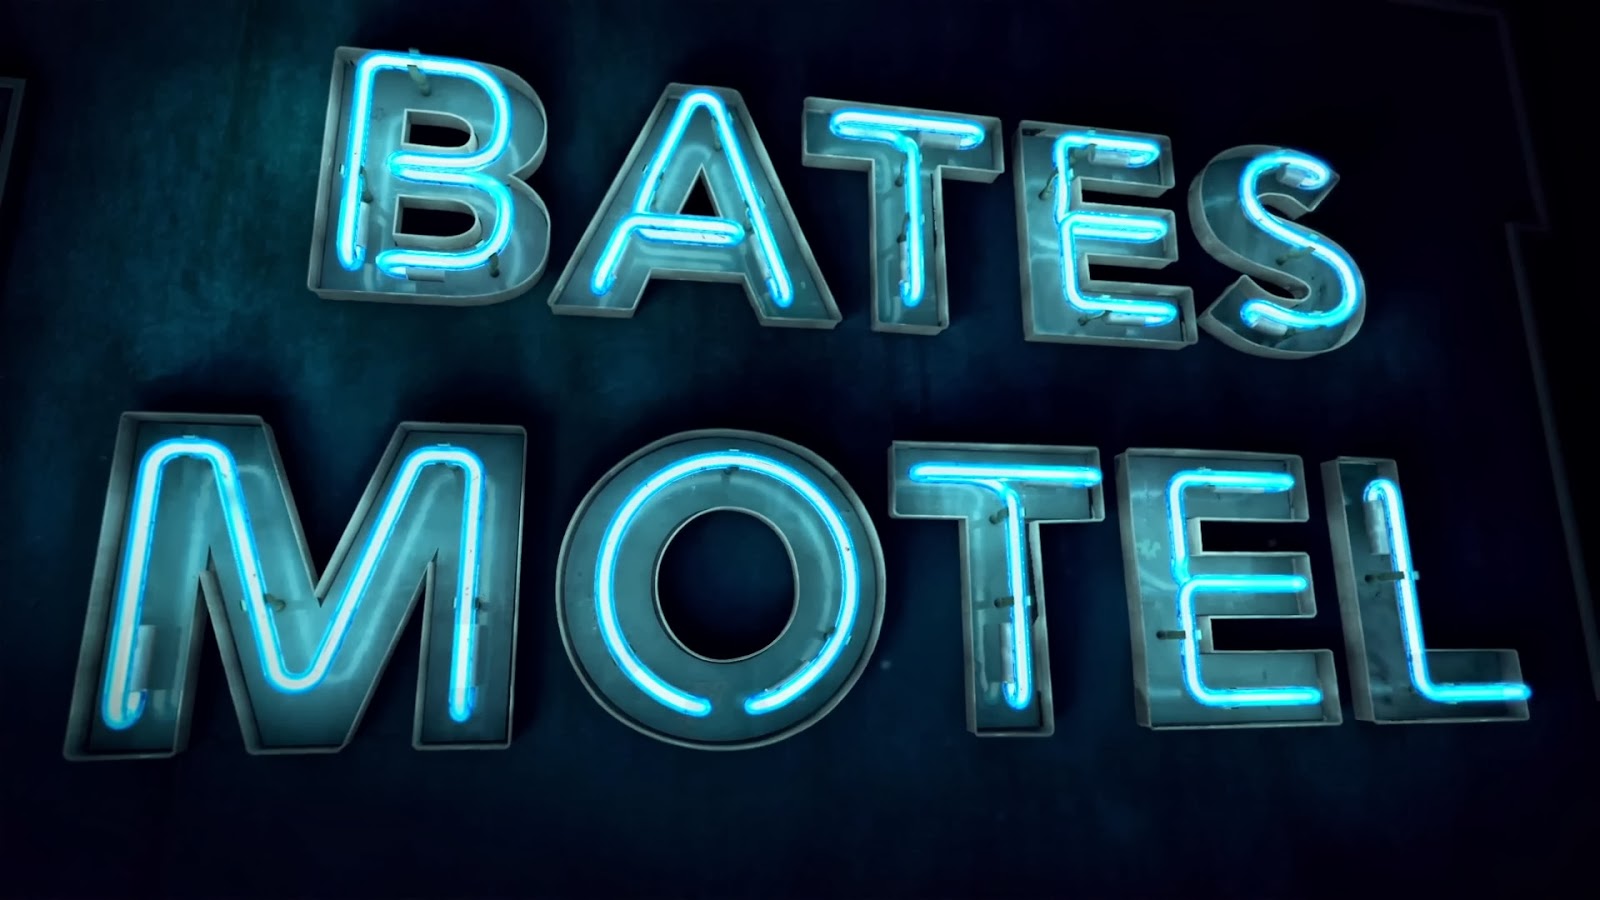 Bates Motel Season 3 Teaser